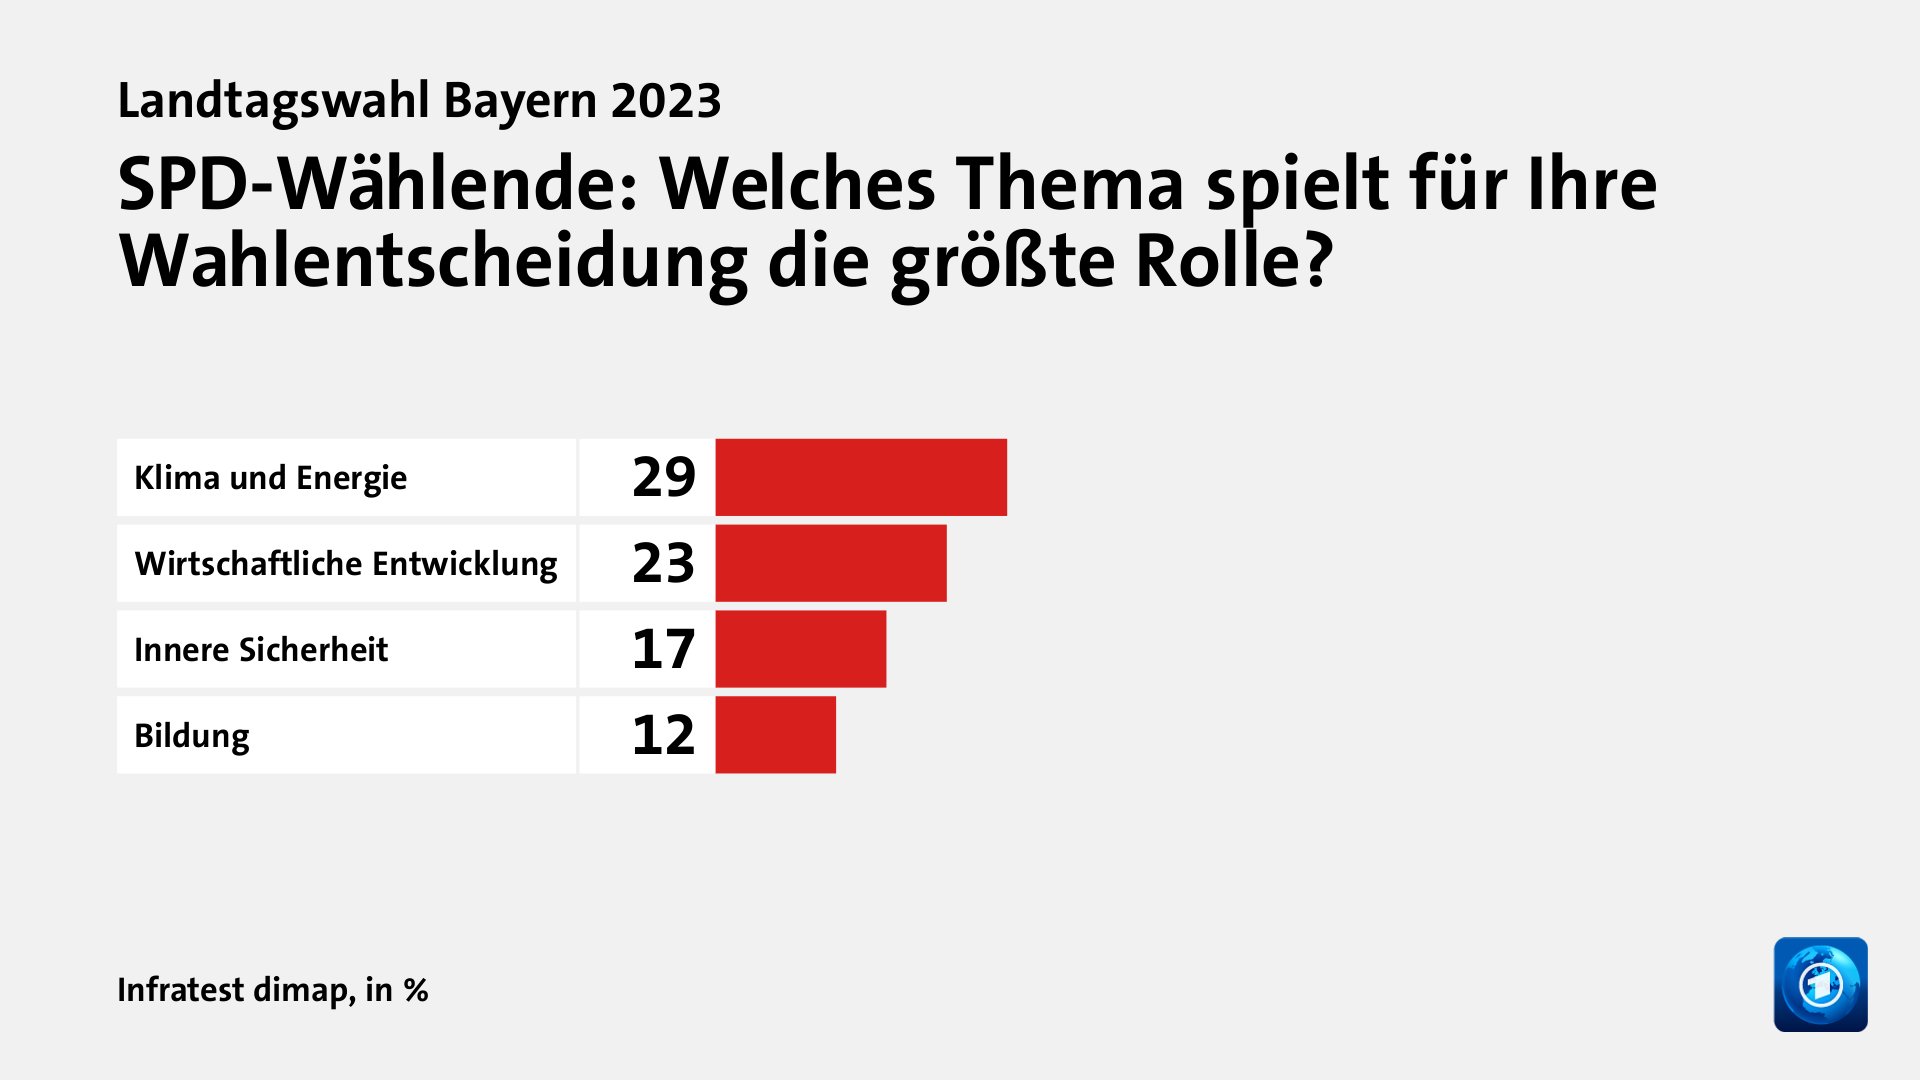 SPD-Wählende: Welches Thema spielt für Ihre Wahlentscheidung die größte Rolle?, in %: Klima und Energie 29, Wirtschaftliche Entwicklung 23, Innere Sicherheit 17, Bildung 12, Quelle: Infratest dimap